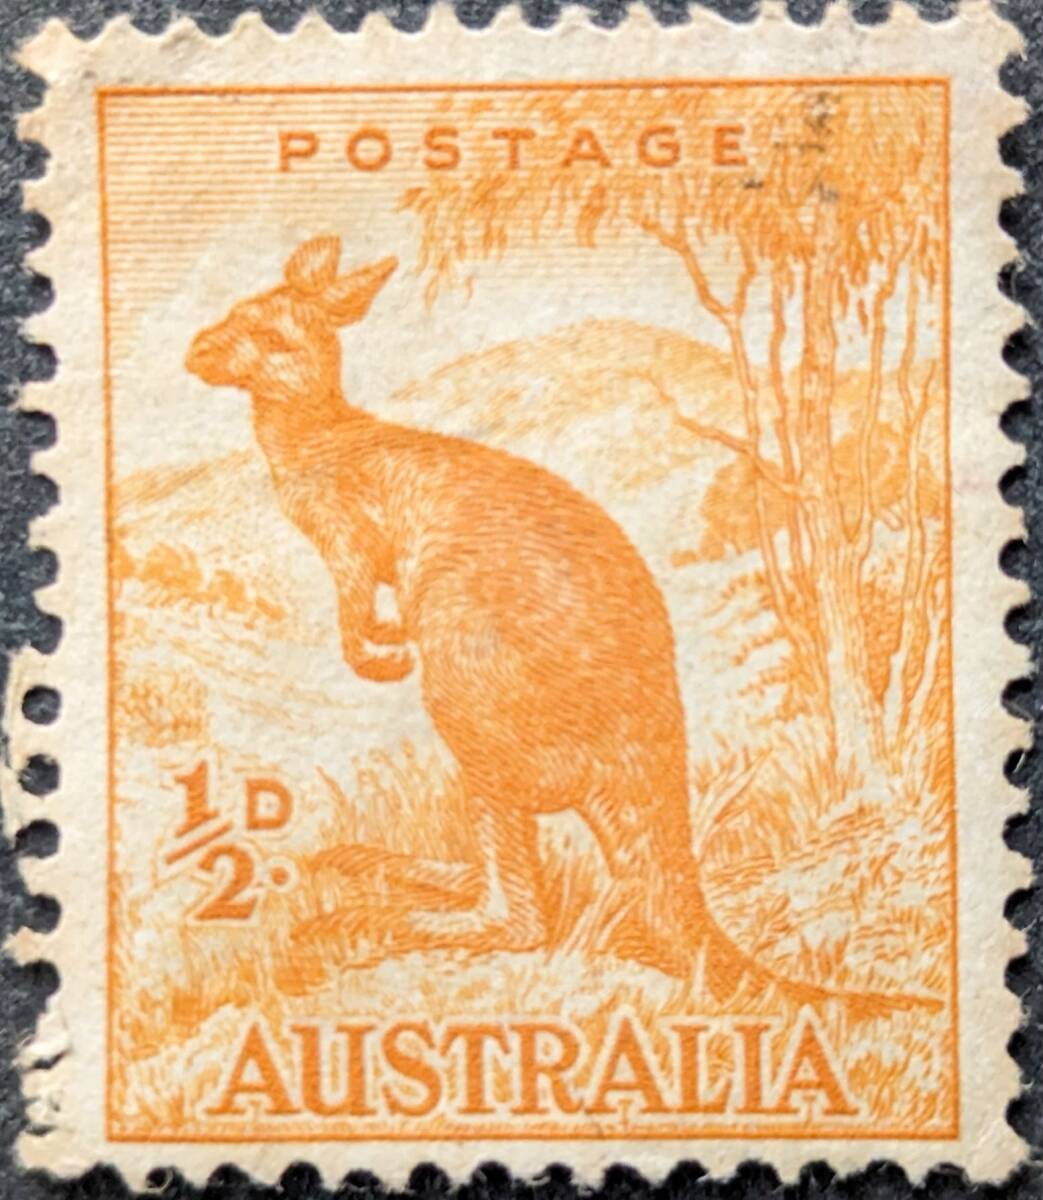 【外国切手】 オーストラリア 1937年05月10日 発行 普通切手 マクロプス・ルーファス 未使用